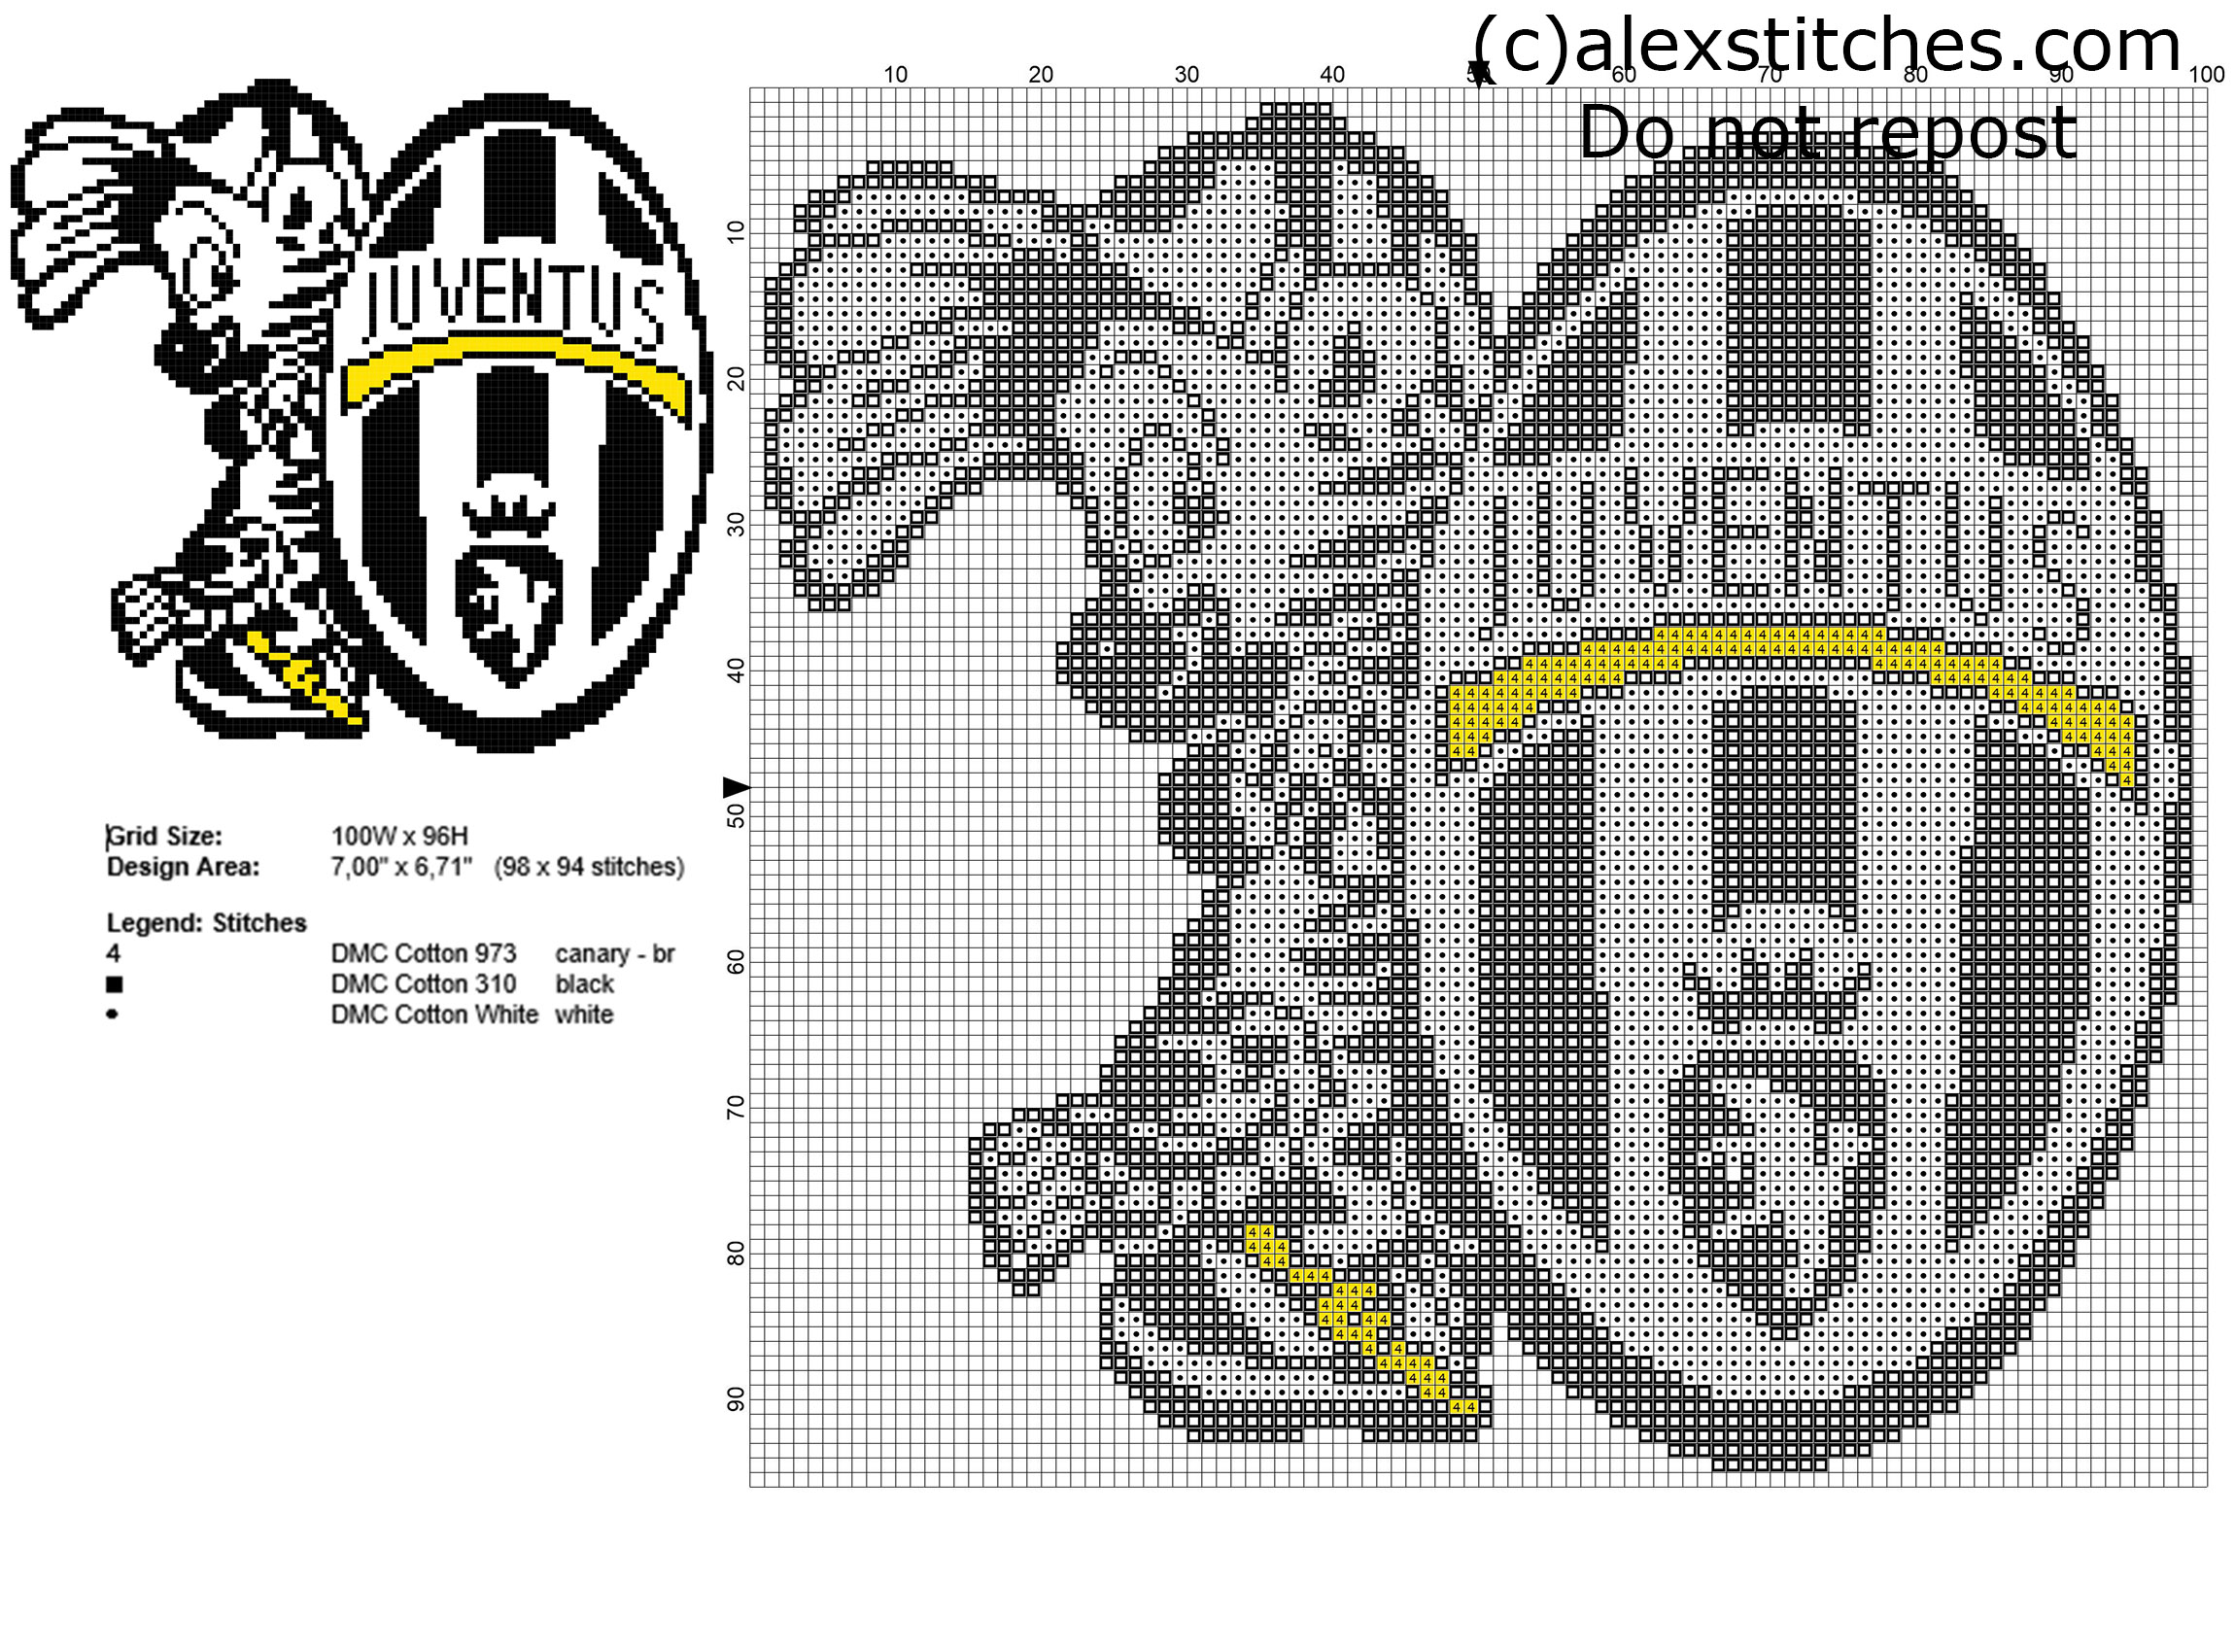 Juventus mascot baby zebra free small cross stitch pattern